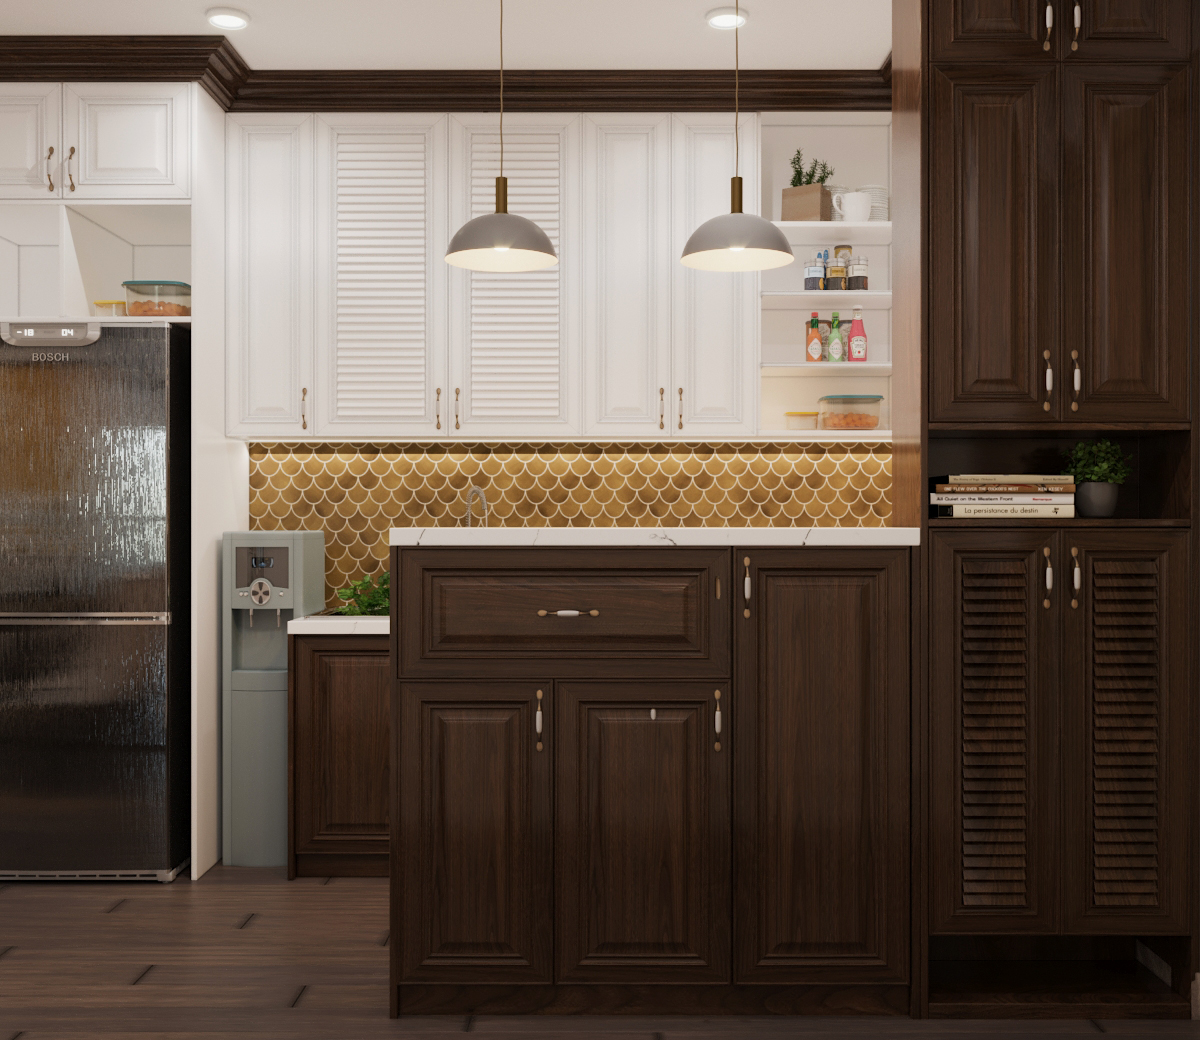 Hệ tủ bếp bằng gỗ màu trắng - nẫu sẫm đan xen giúp cân bằng bảng màu một cách tinh tế.